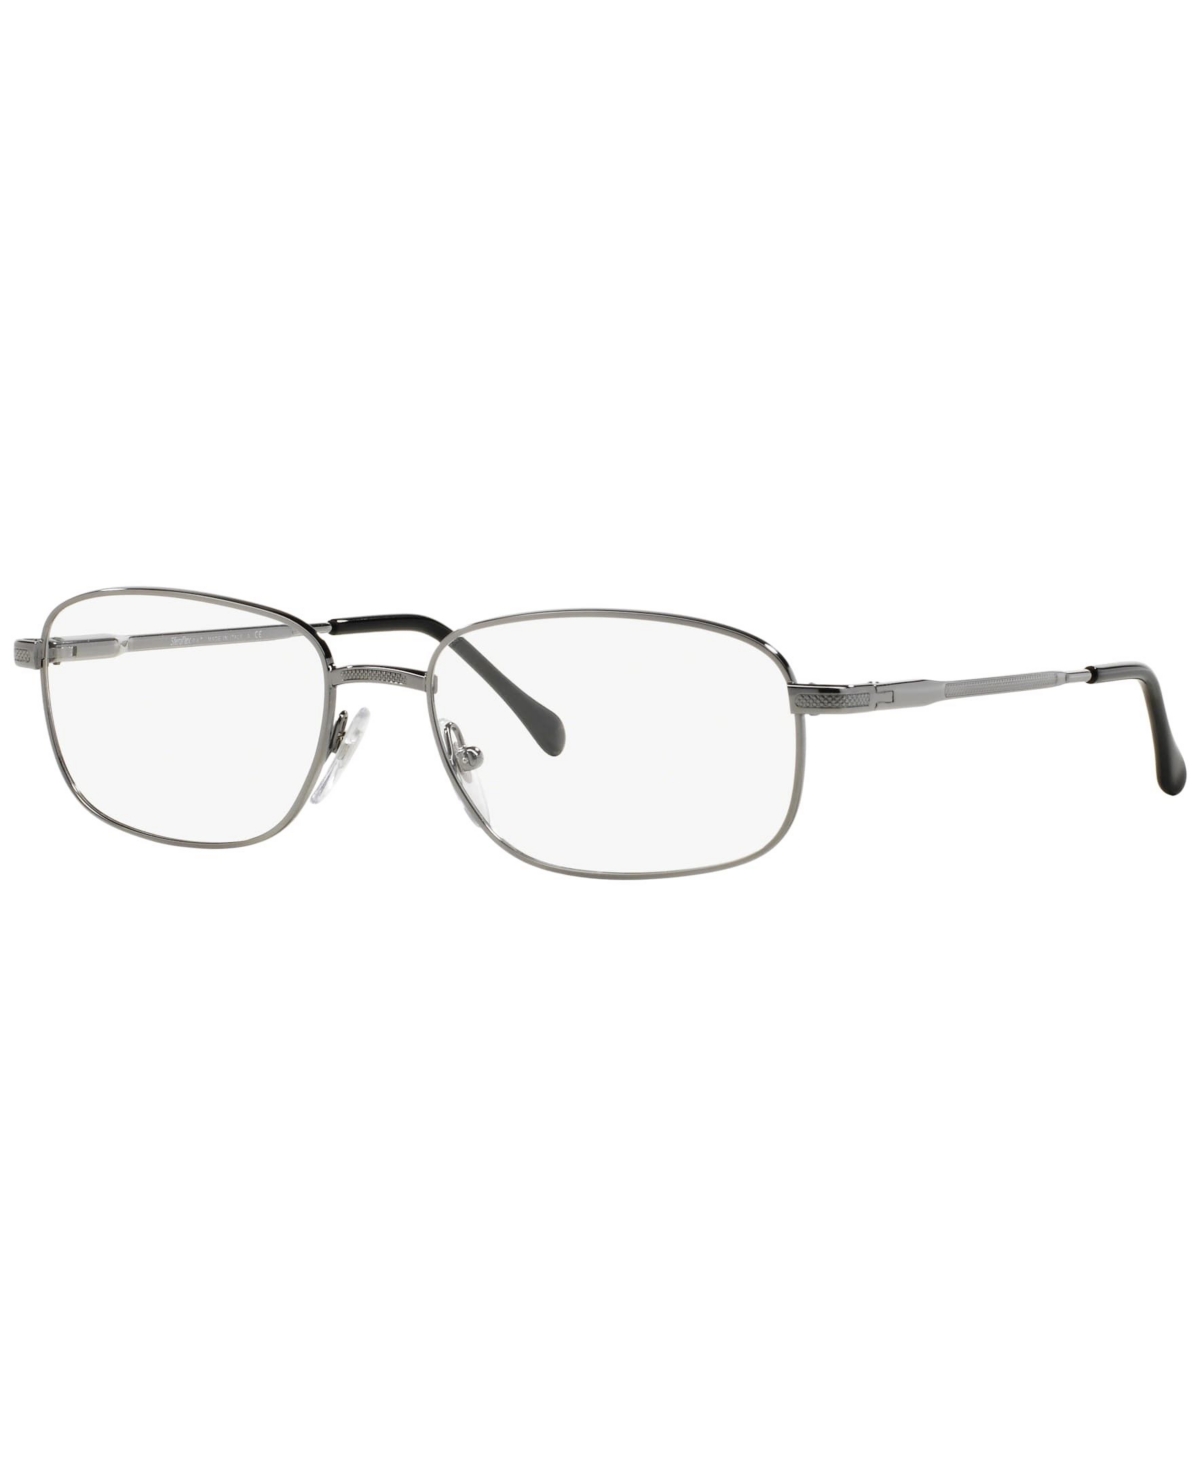 SF2086 Men's Square Eyeglasses - Dark Copper